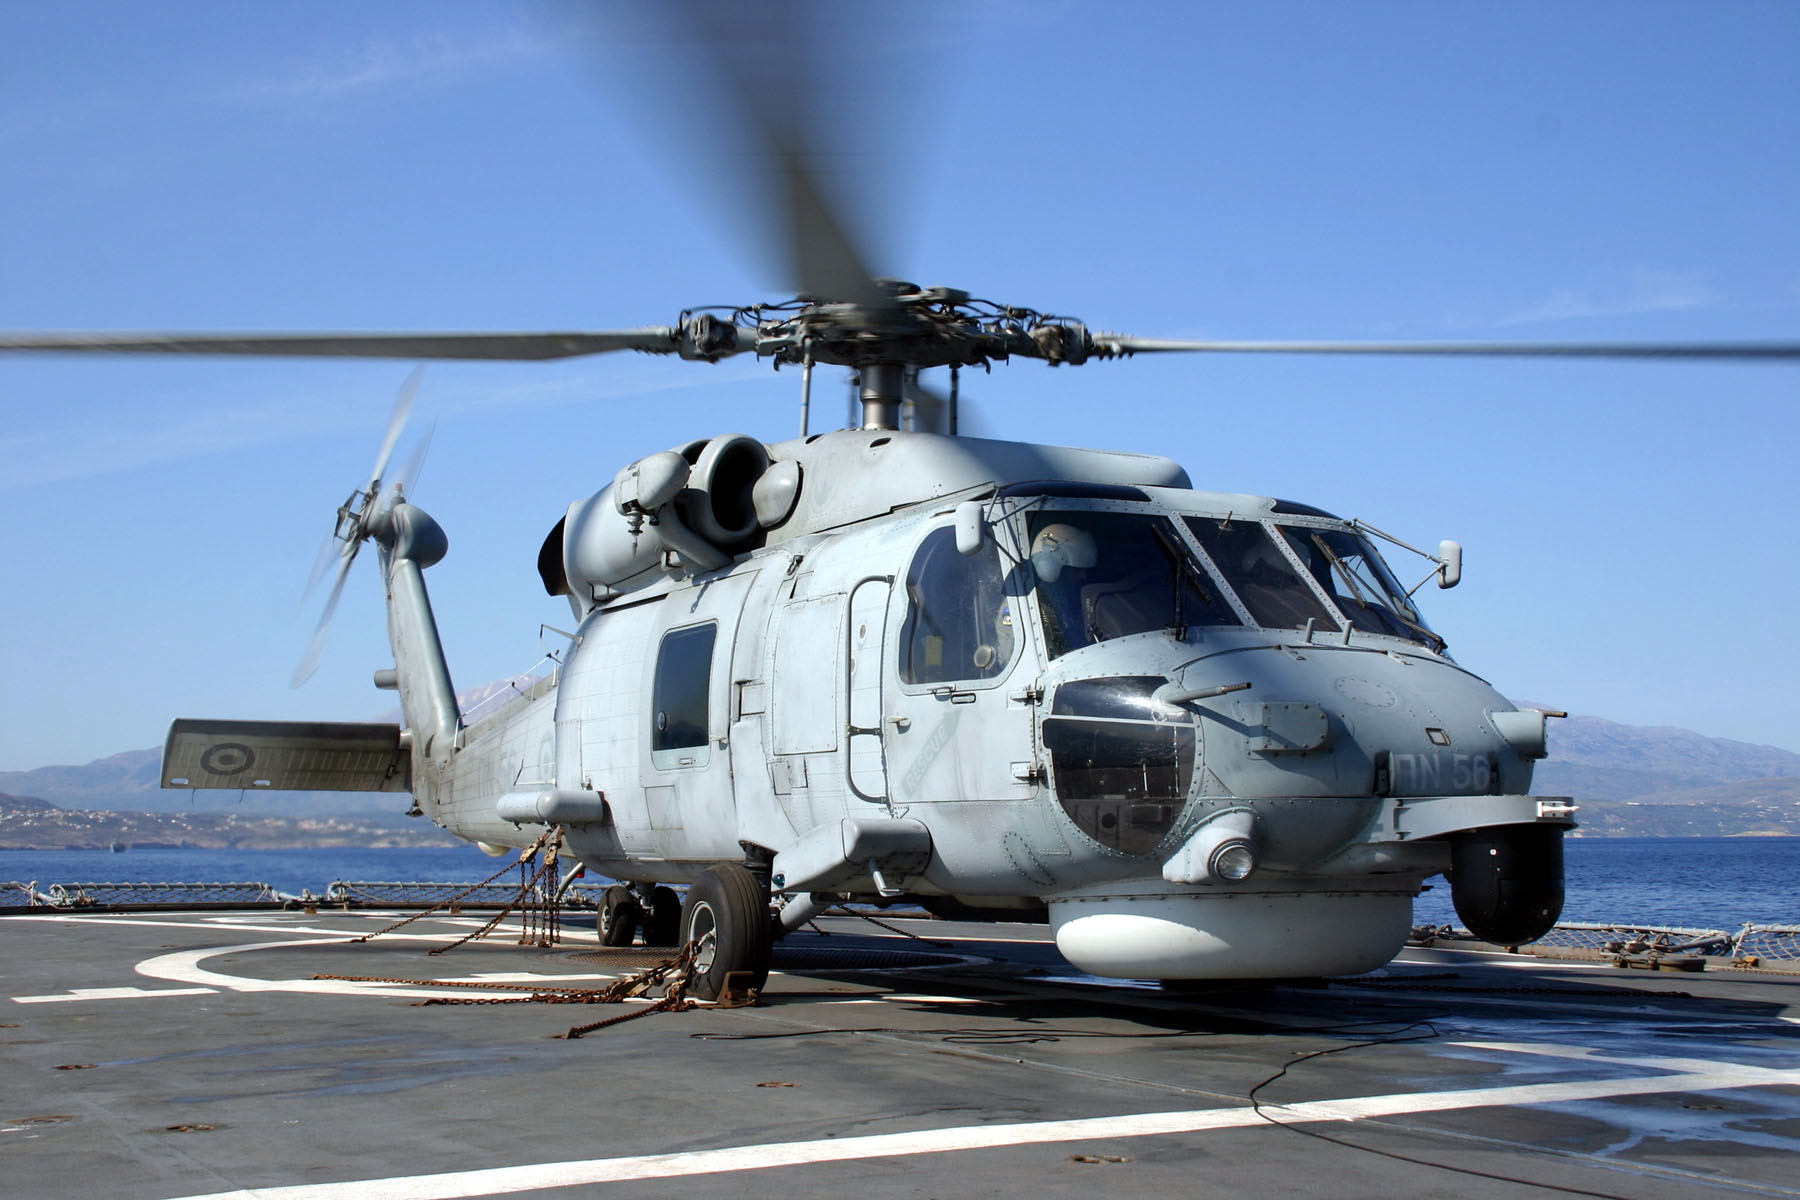 Βίντεο: Η διάσωση δύο ψαράδων από ελικόπτερο του Πολεμικού Ναυτικού